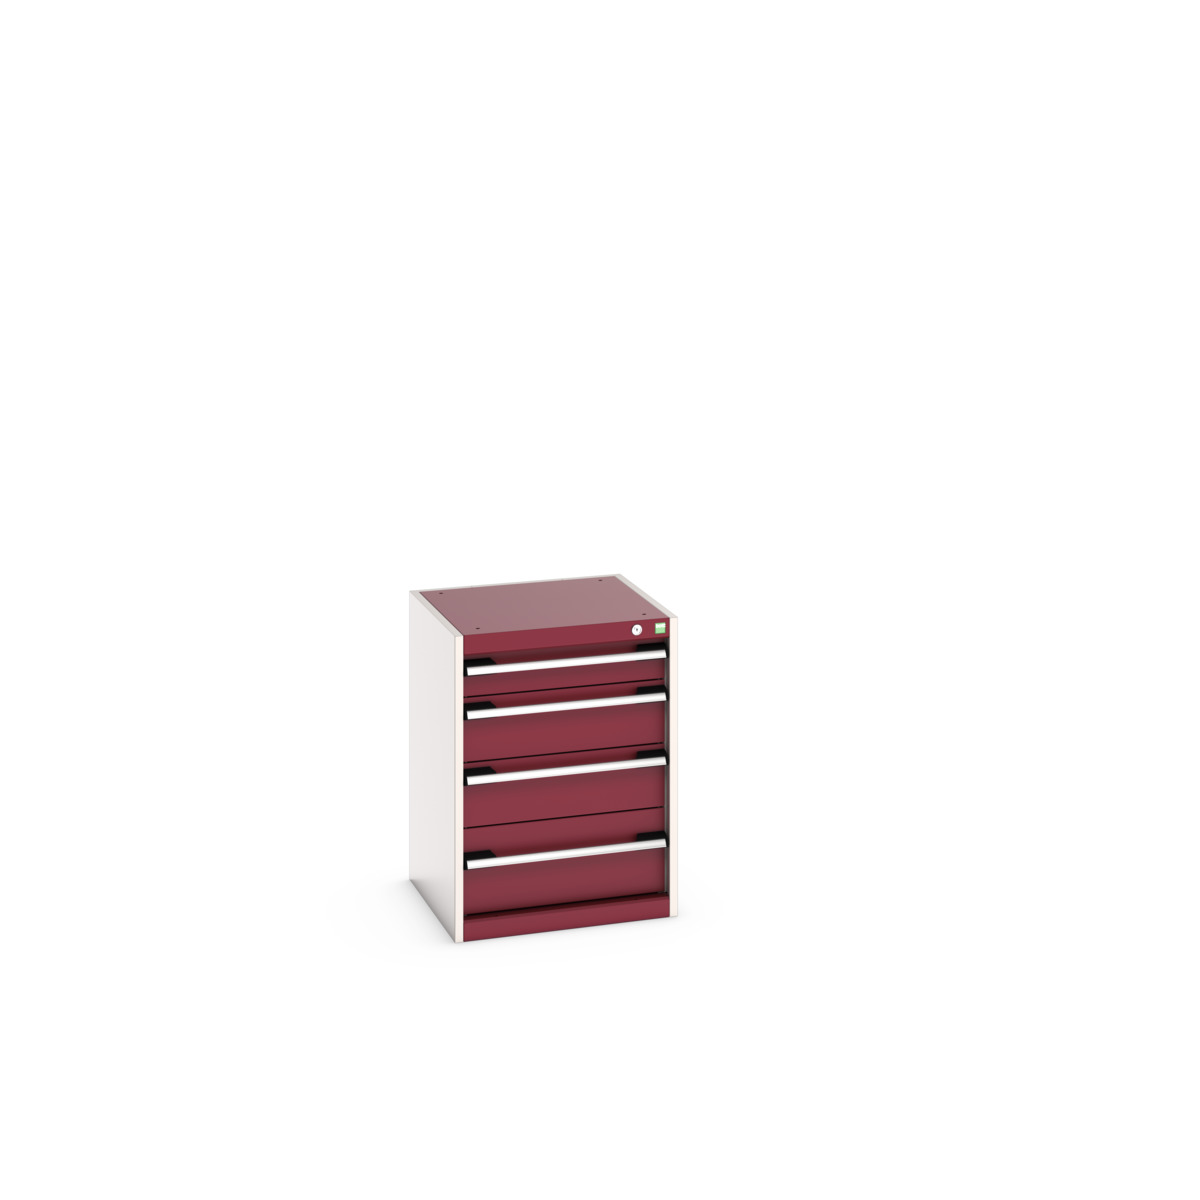 40010021.24V - cubio drawer cabinet